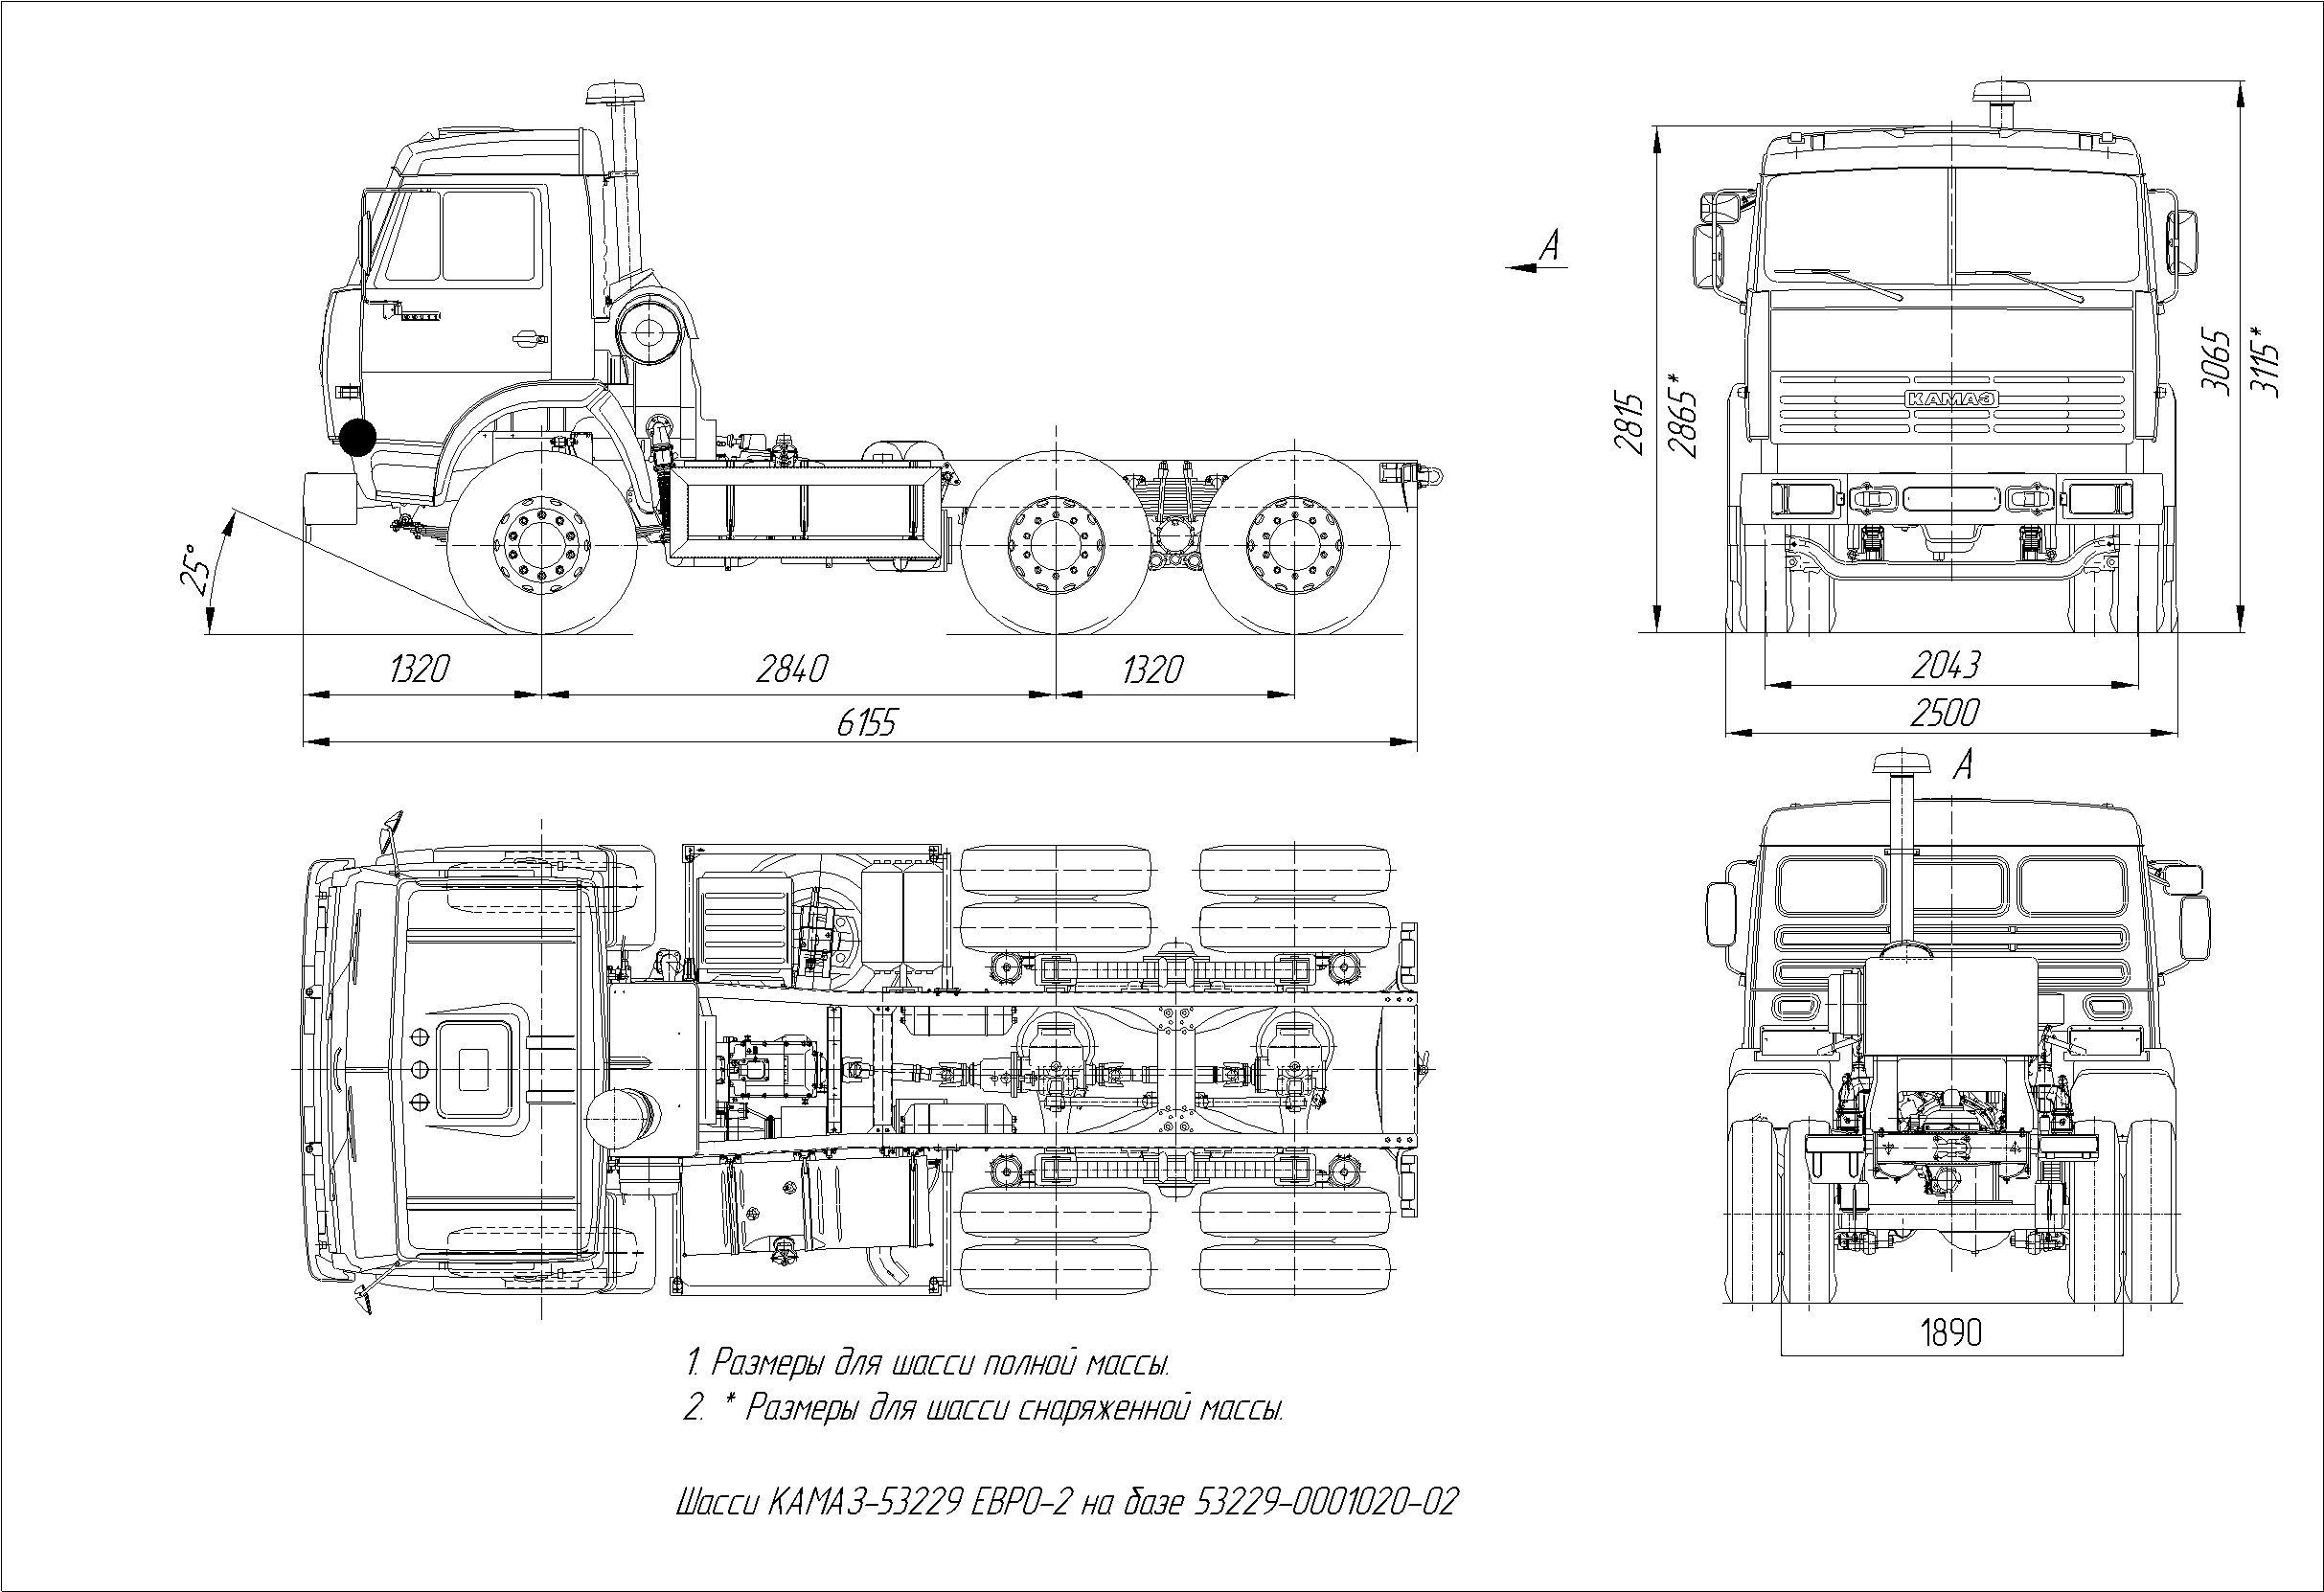 KamAZ-53229 blueprint